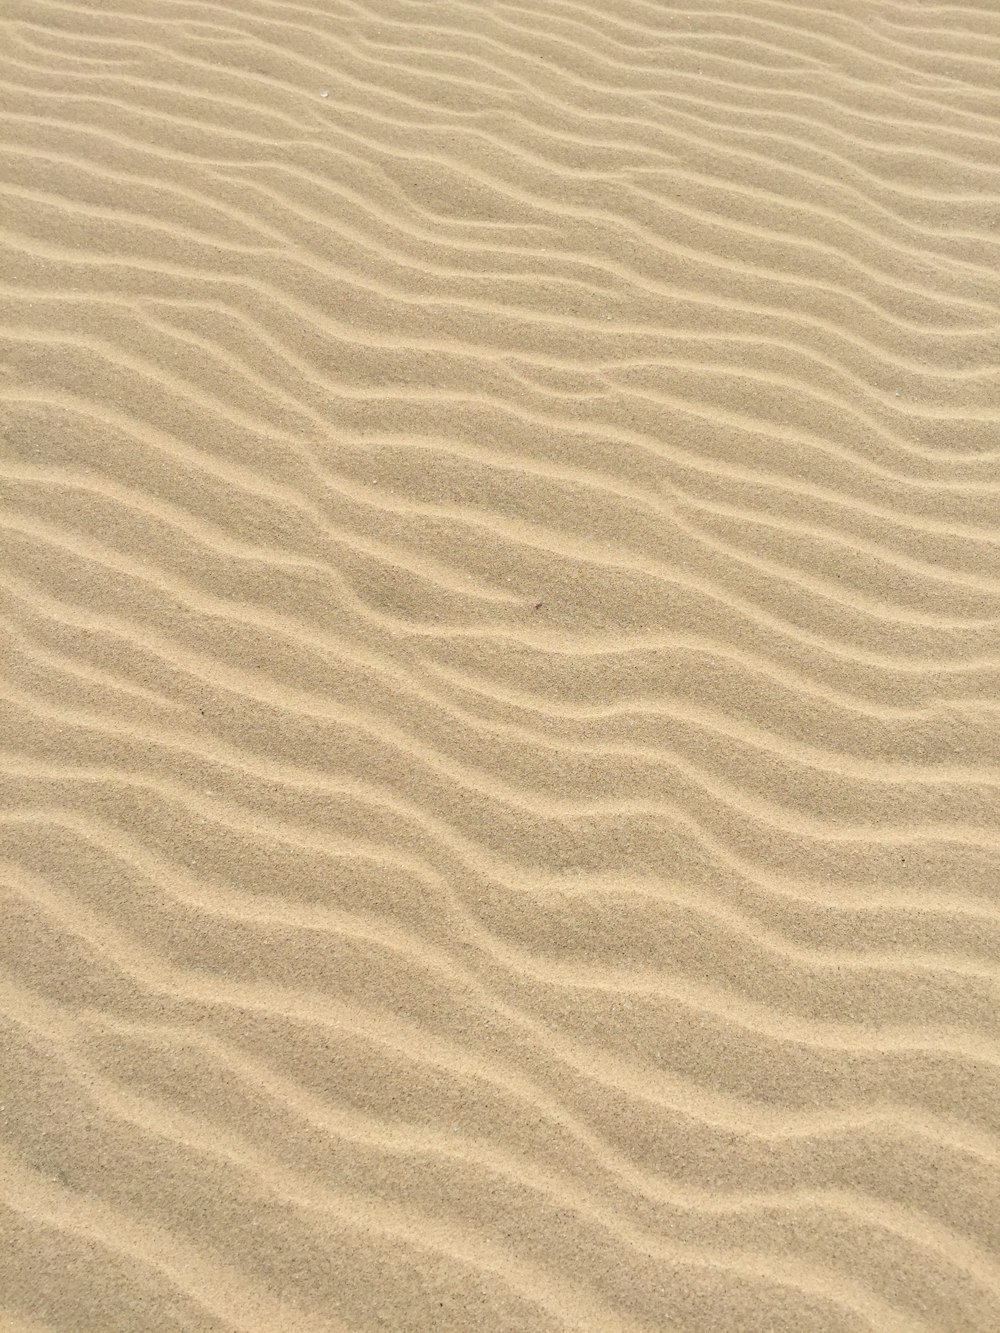 茶色の砂浜